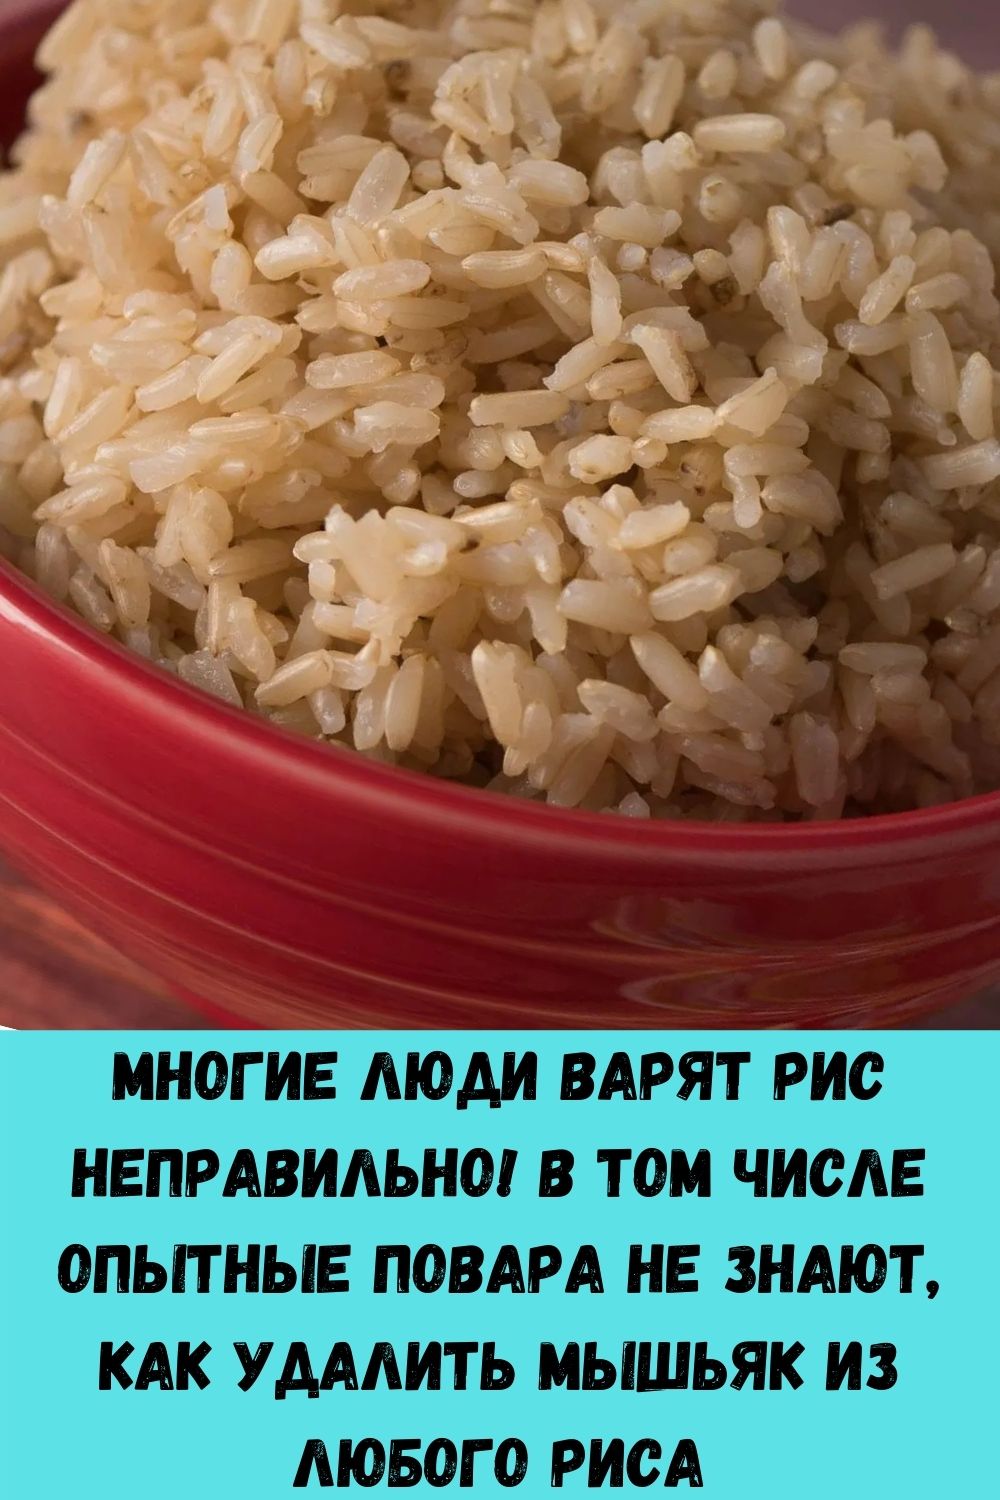 Многие люди варят рис неправильно! В том числе опытные повара не знают, как удалить мышьяк из любого риса